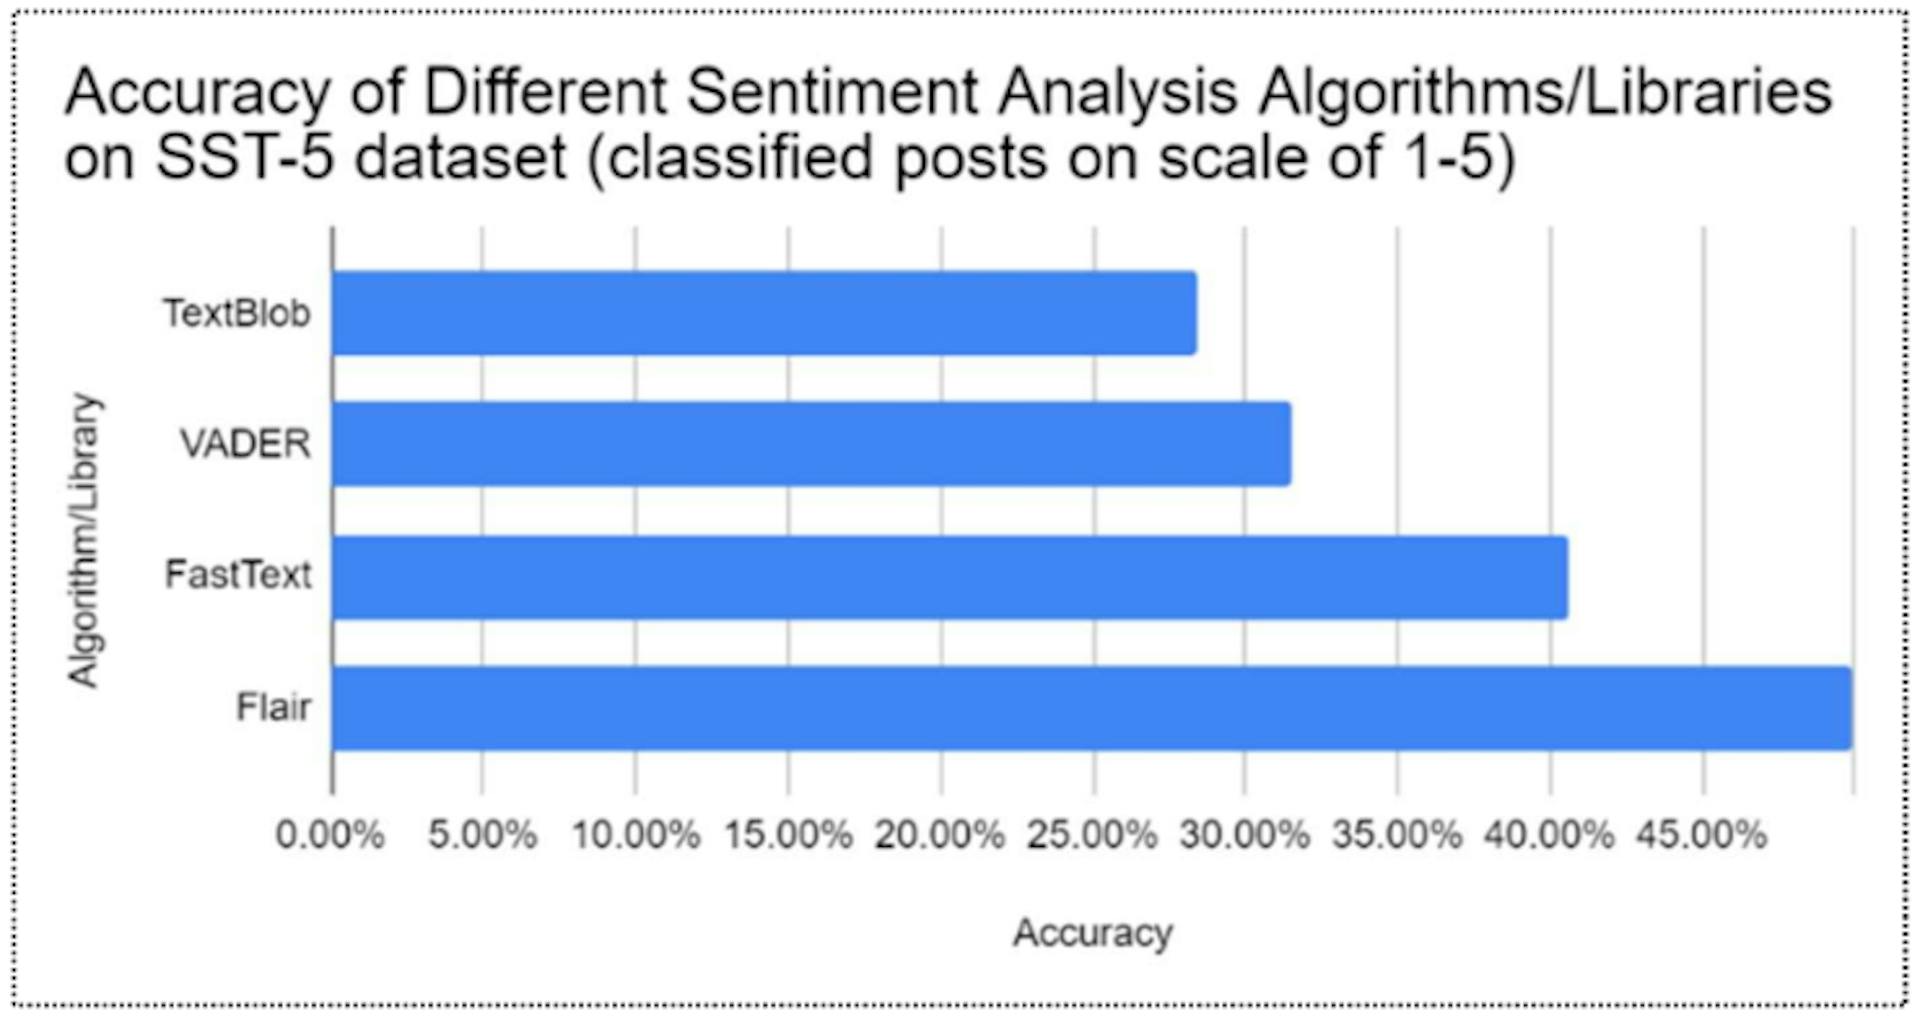 Figura 4: Comparación de la precisión de diferentes algoritmos de análisis de sentimientos en la base de datos SST-5